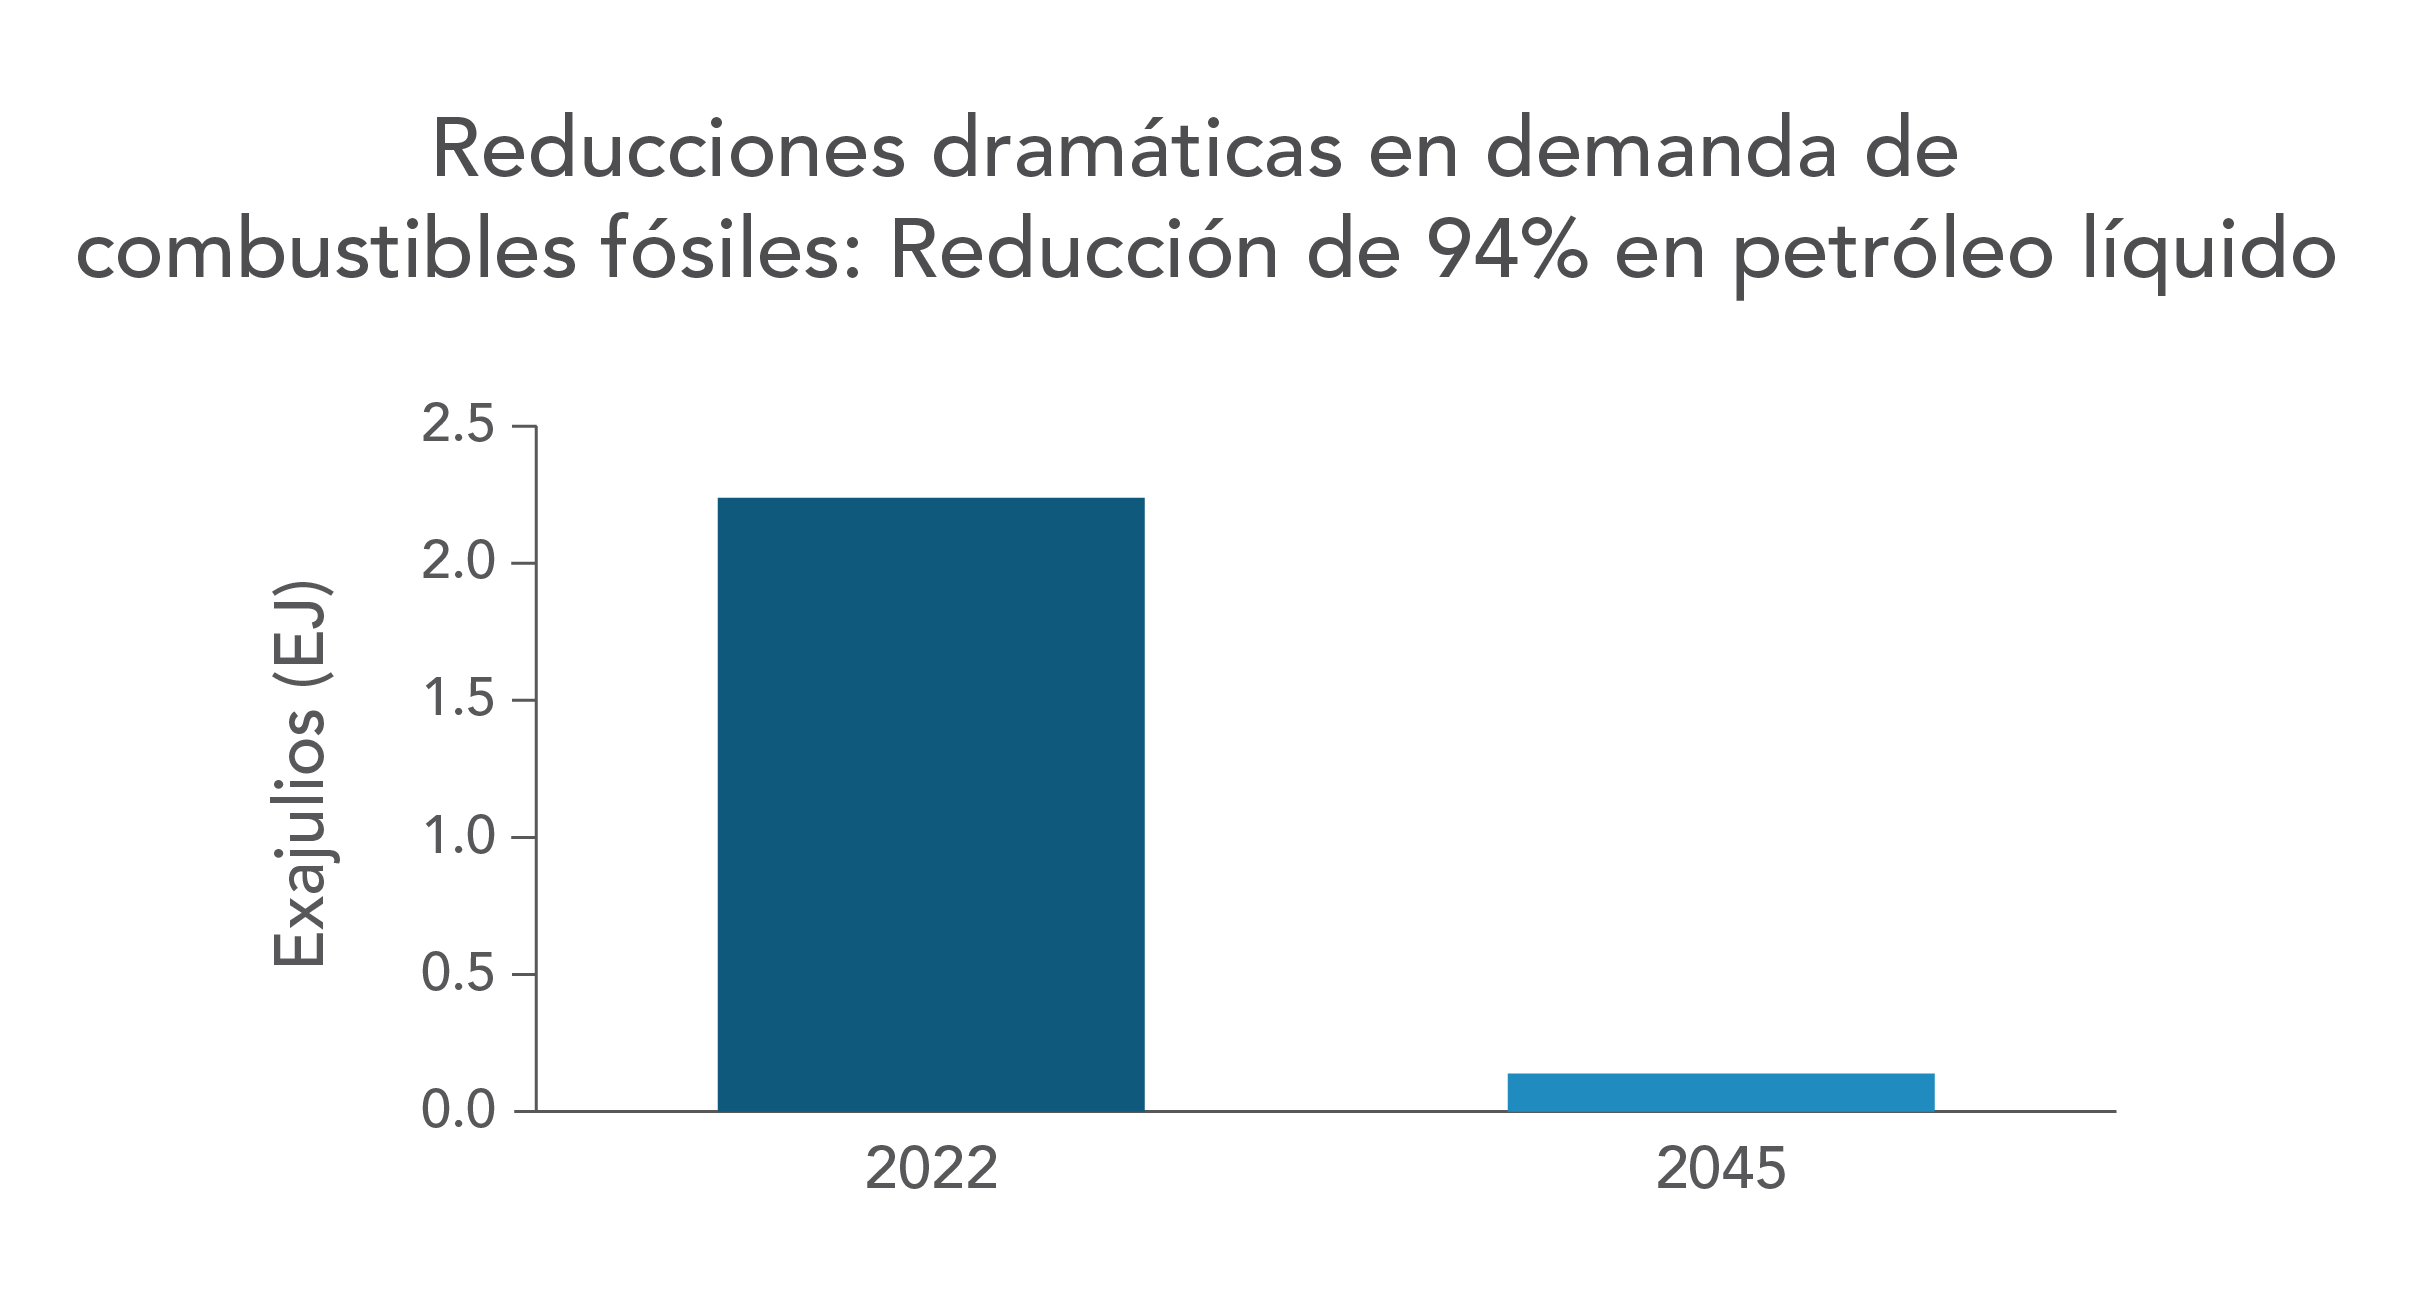 Reducciones dramáticas en demanda de combustibles fósiles Reducción de 94% en petróleo líquido